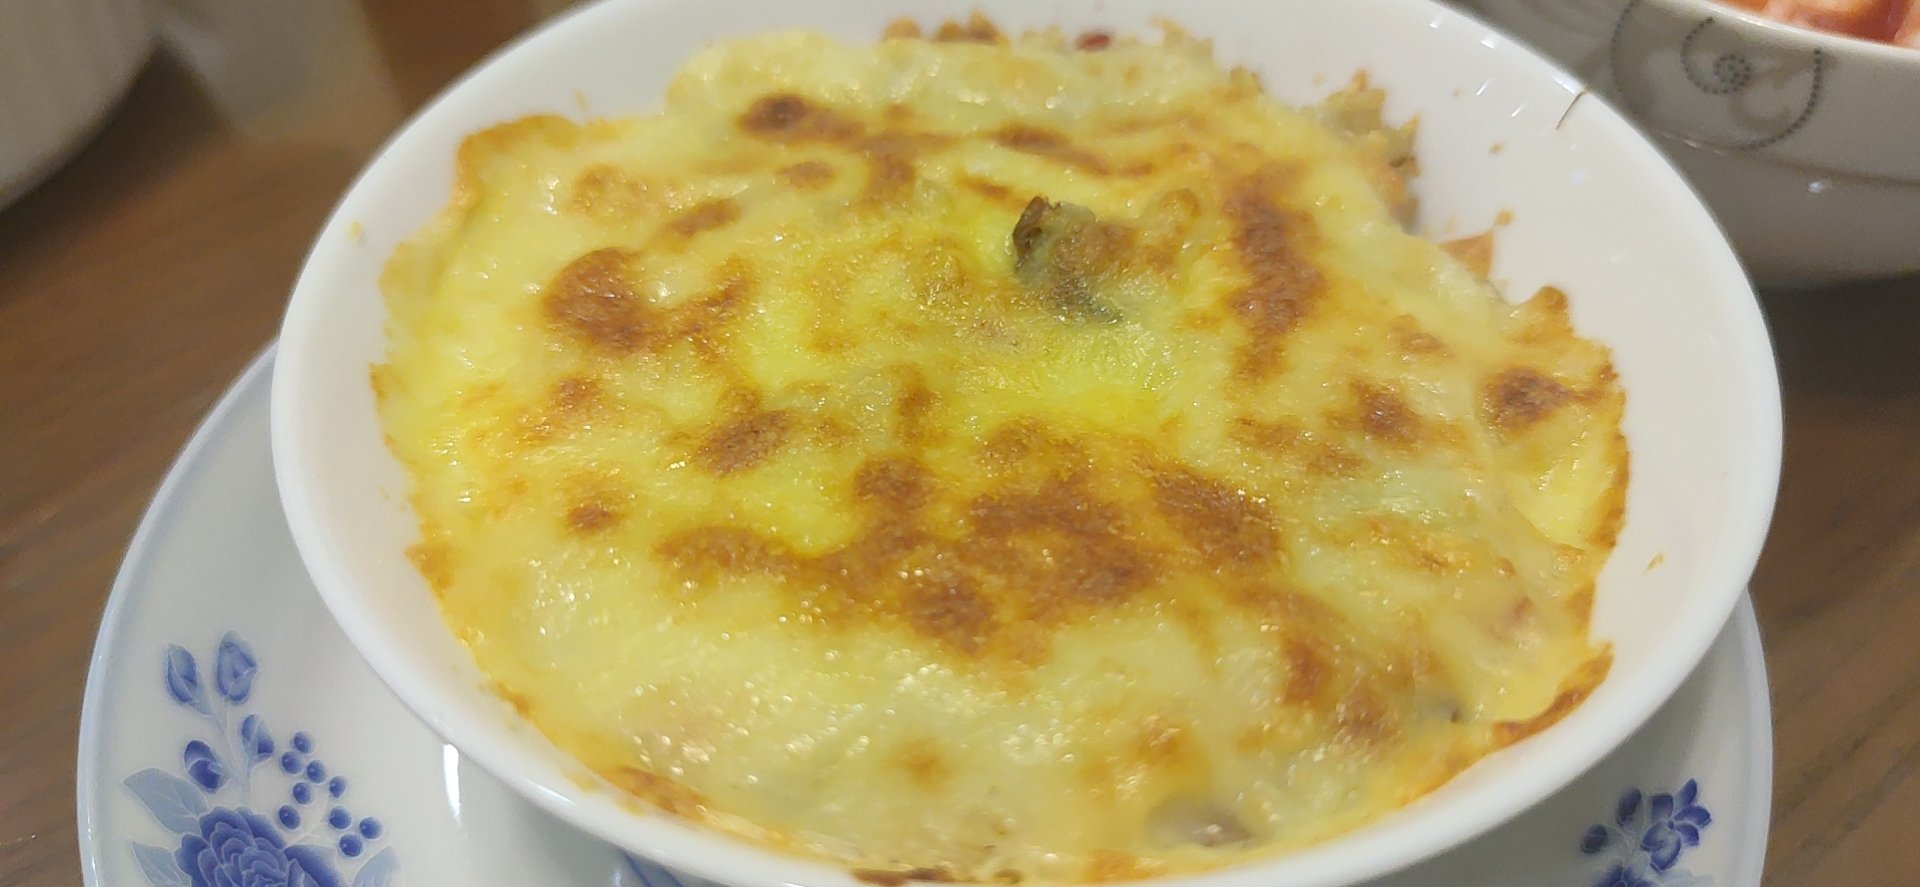 海鲜焗饭 Seafood Fried Rice with Cheesy Topping